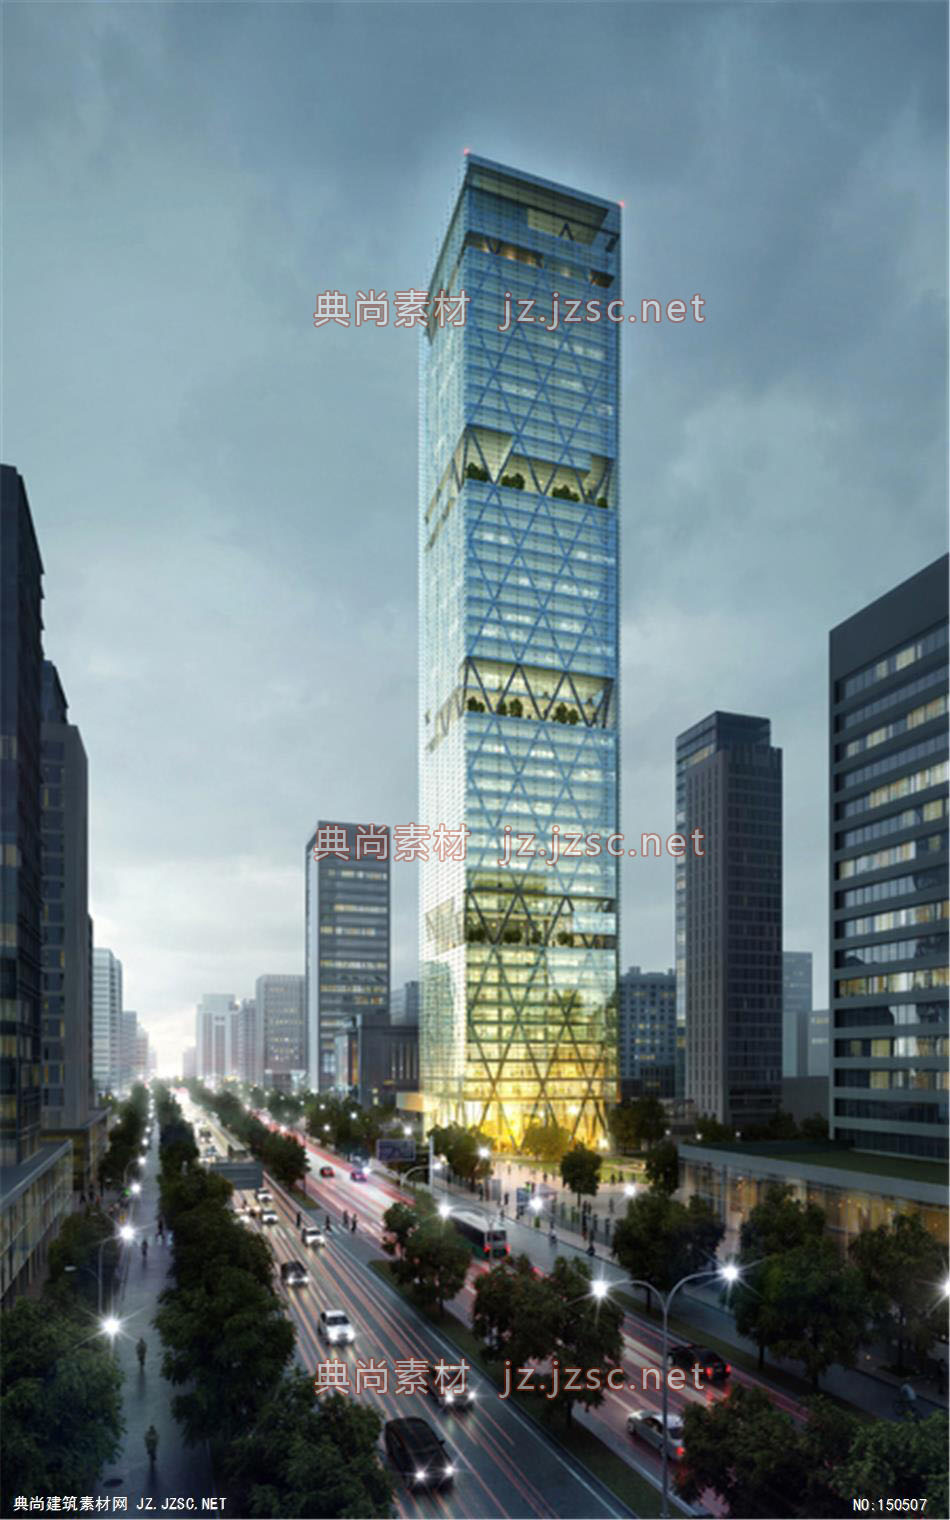 Torre 办公楼03高层办公效果图+交通及医疗建筑效果图